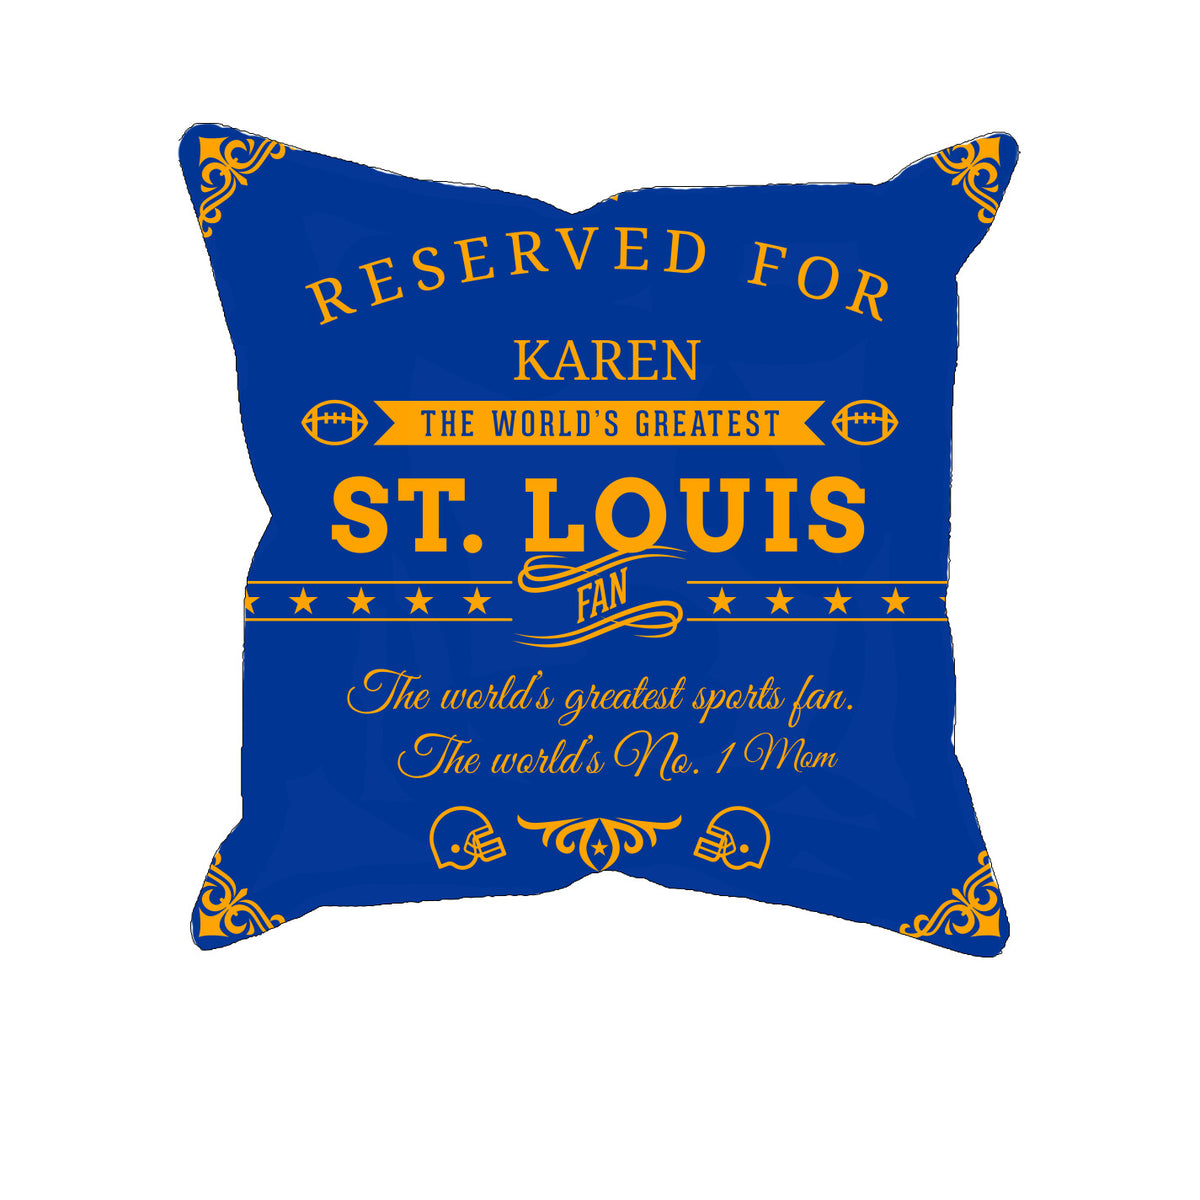 St. Louis Football Fan